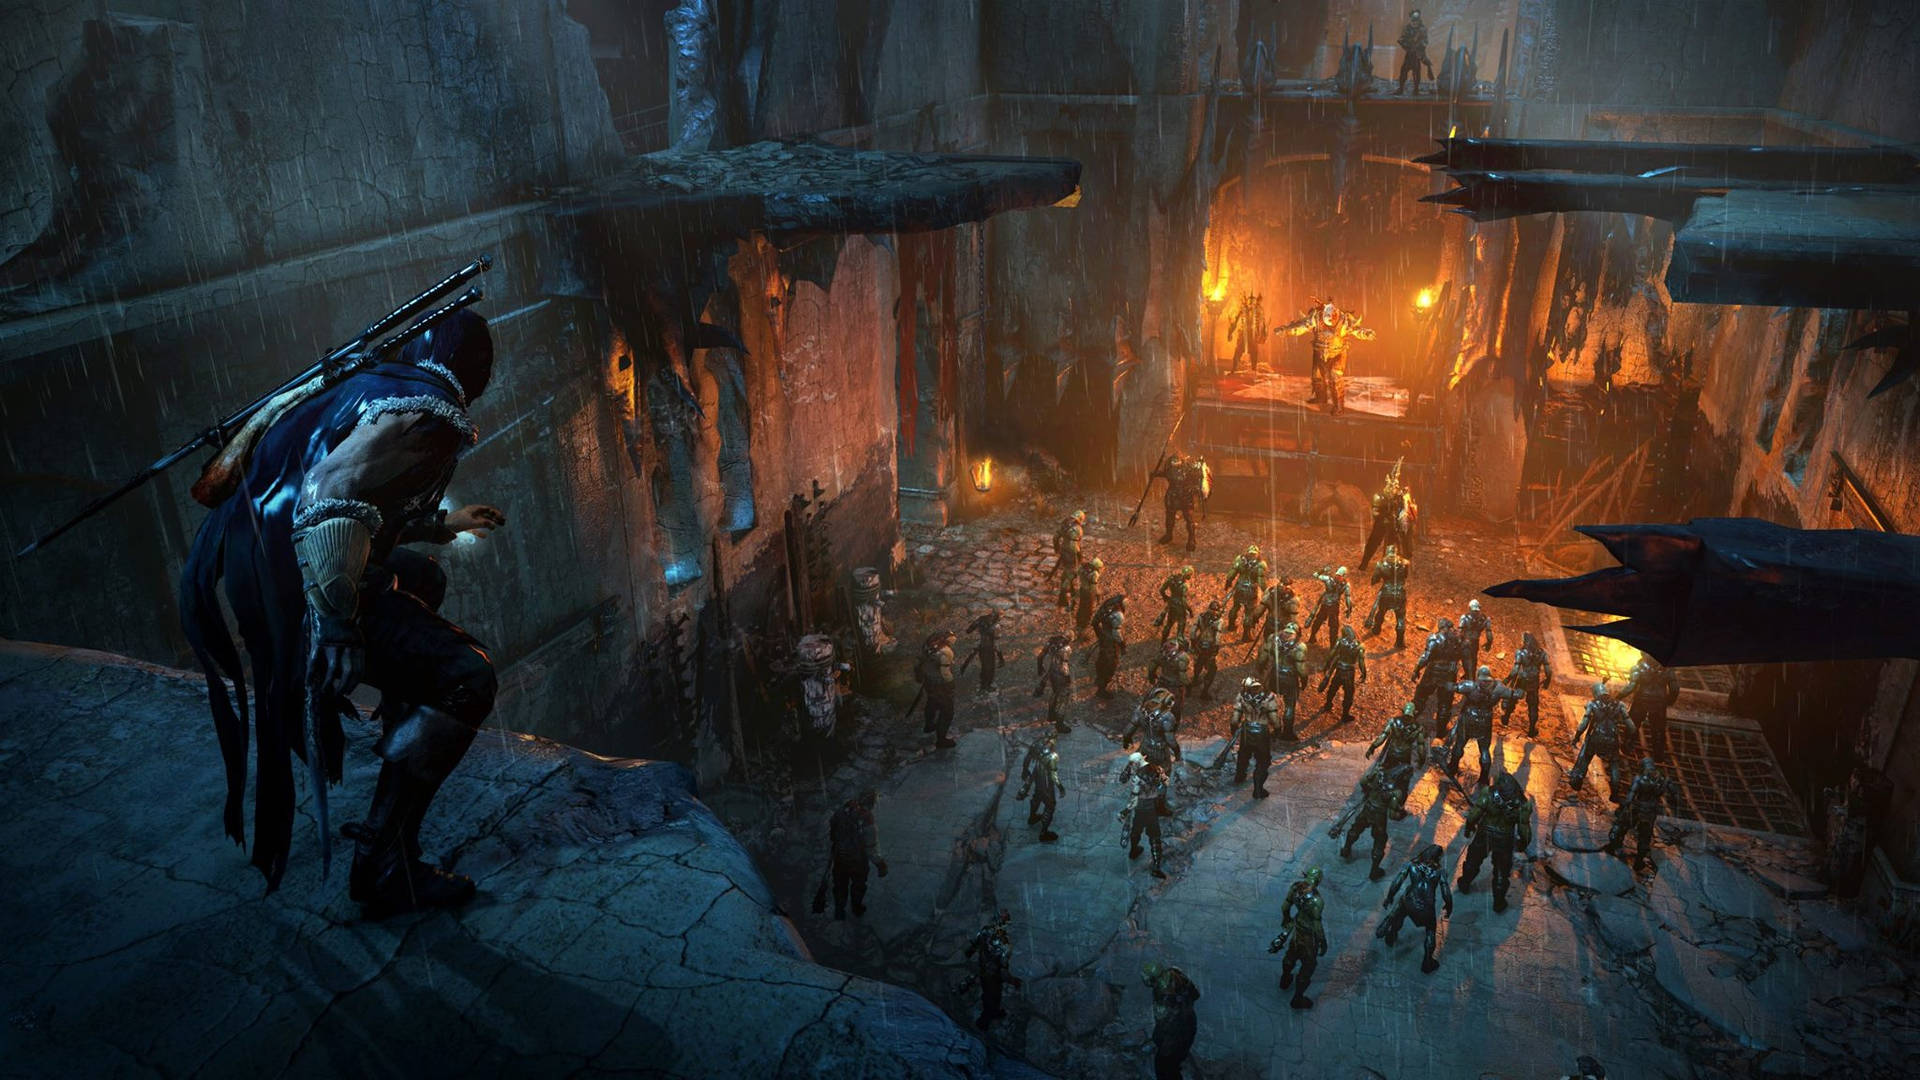 Epic Battle Scene In Shadow Of Mordor 4k Wallpaper